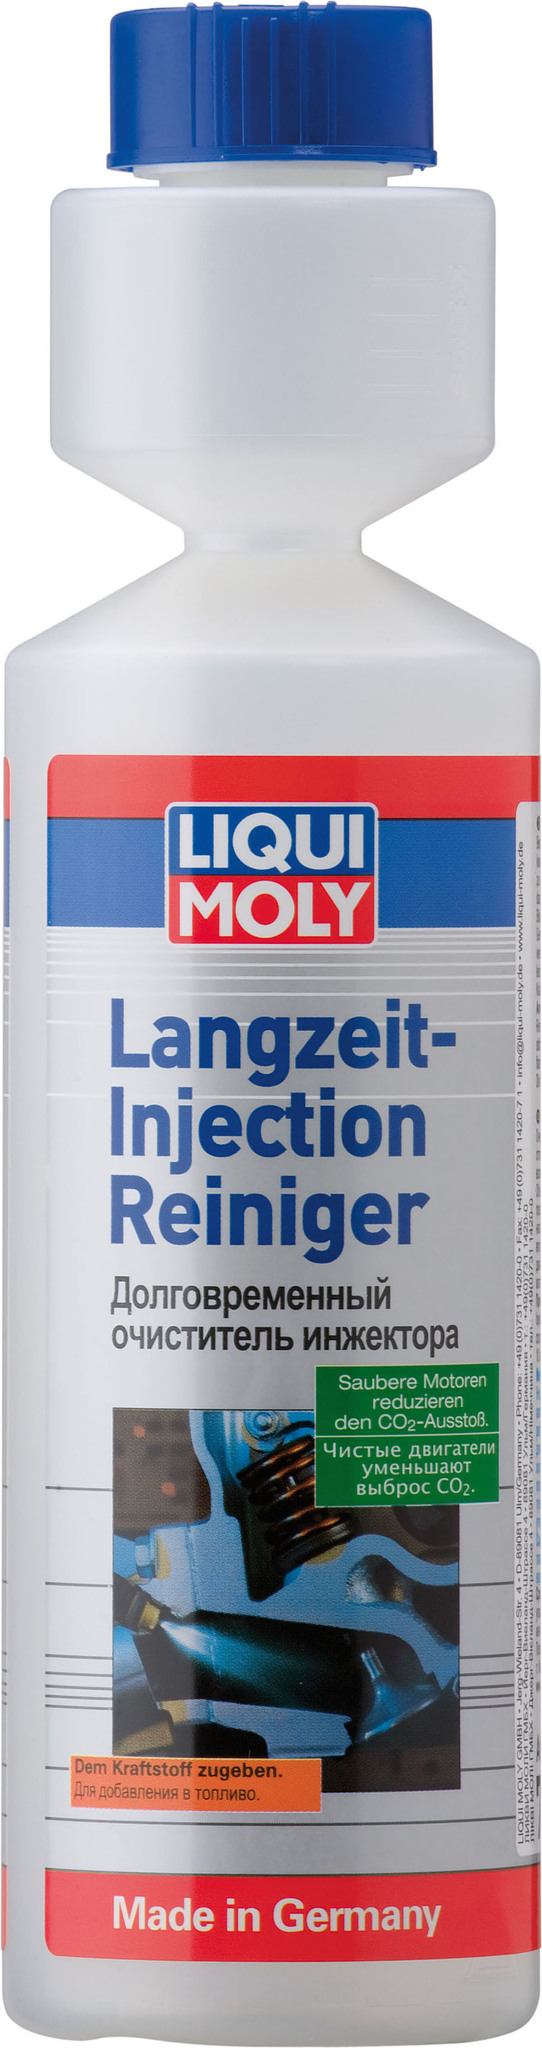 Liqui Moly Langzeit Injection Reiniger (250мл) - Долговременный очиститель инжектора